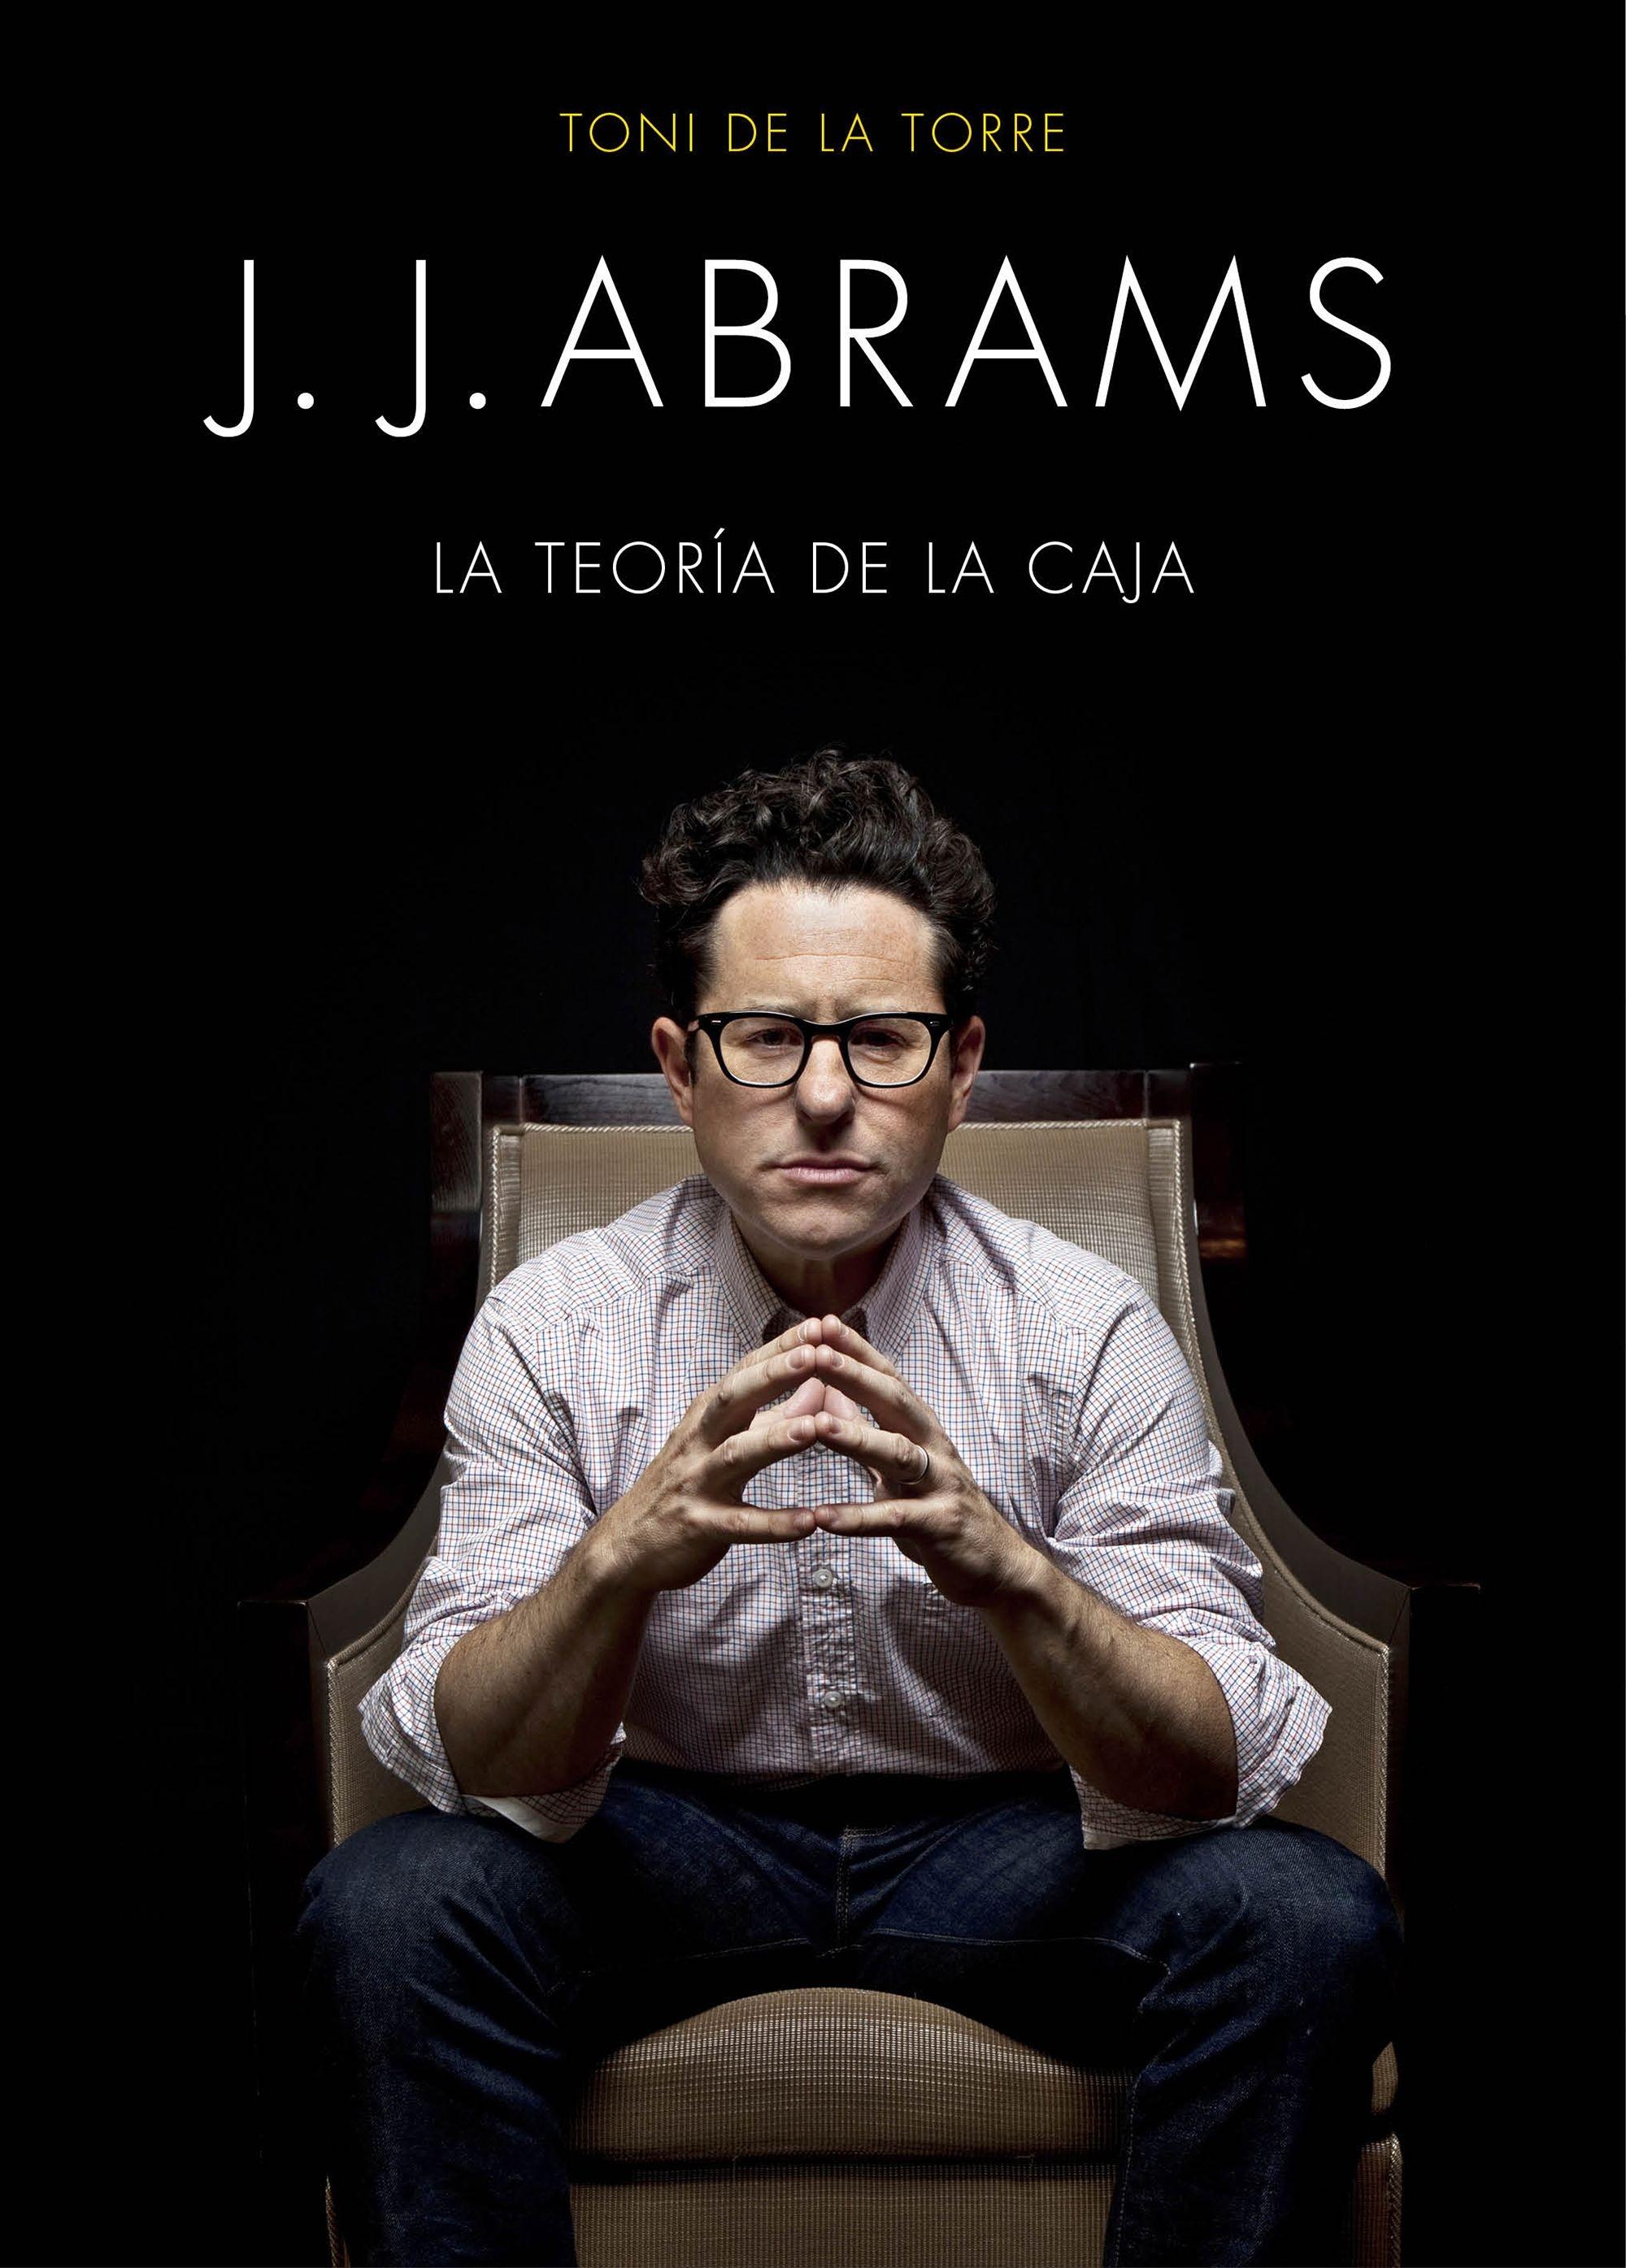 J. J. ABRAMS "LA TEORÍA DE LA CAJA"